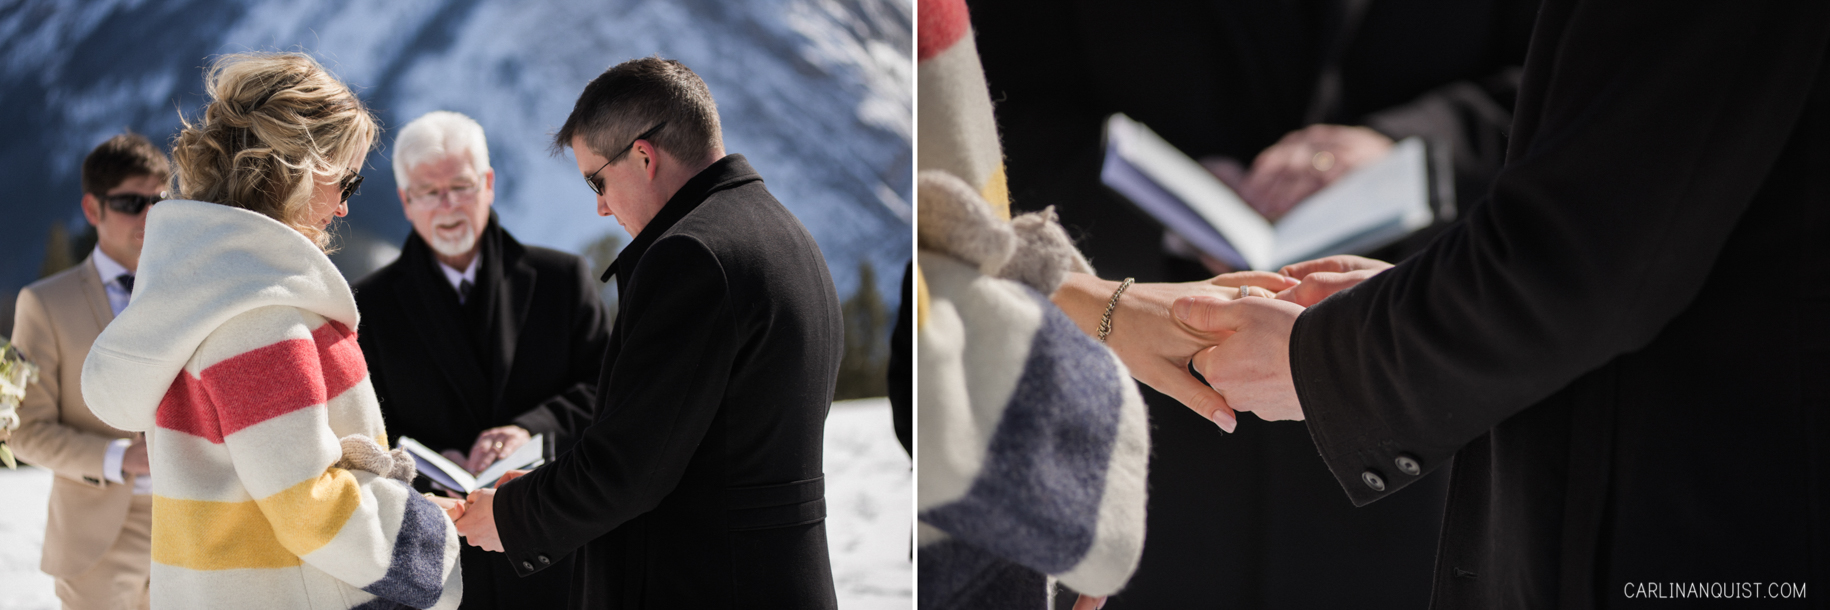 Outdoor Winter Wedding Ceremony in Banff